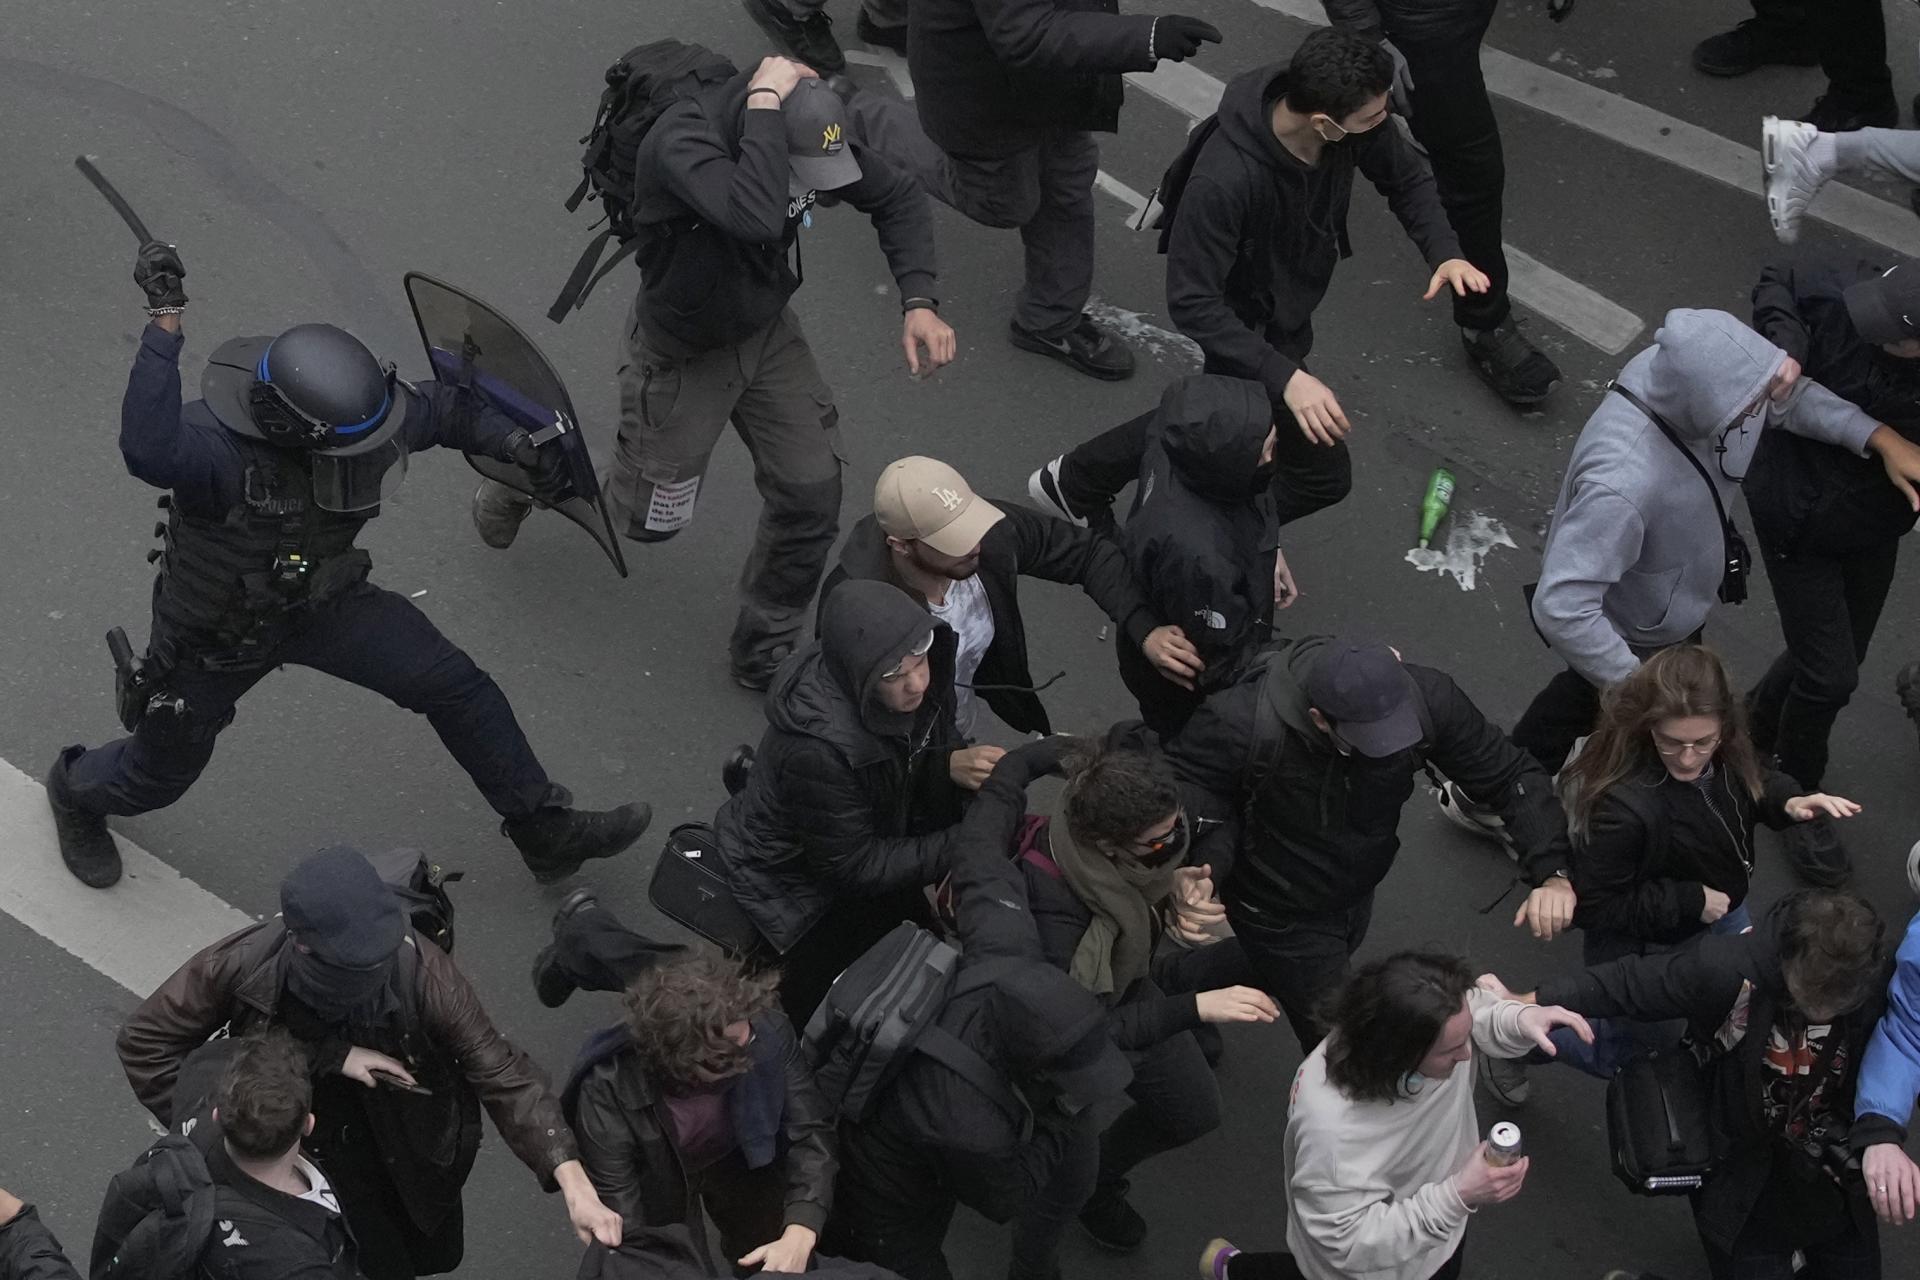 Francúzska polícia je pod paľbou kritiky za tvrdý zásah voči demonštrantom